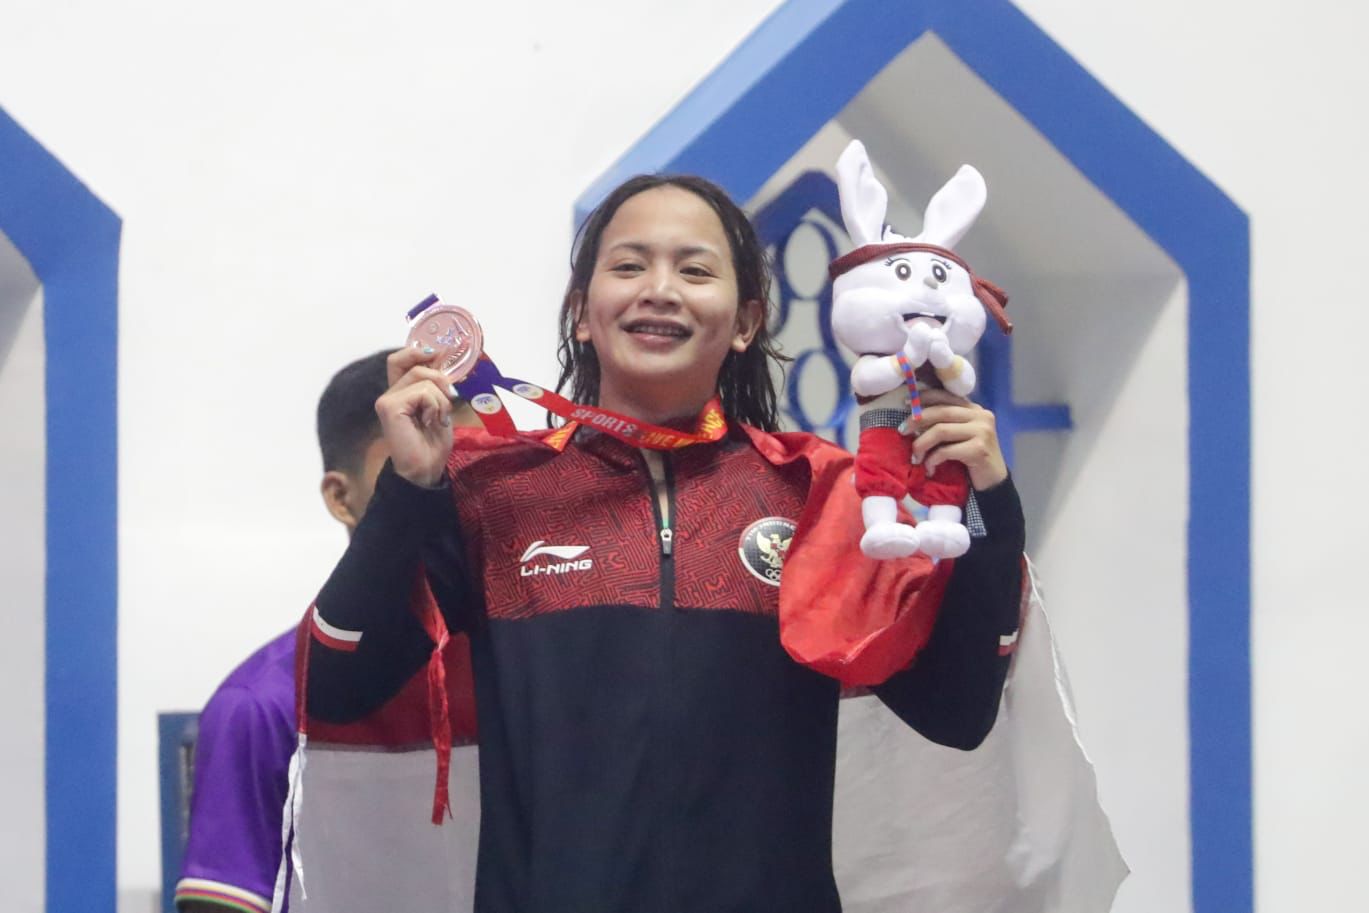 Angel Gabriel Yus Sumbang Medali Perunggu dari Nomor Baru 100 Meter Gaya Punggung